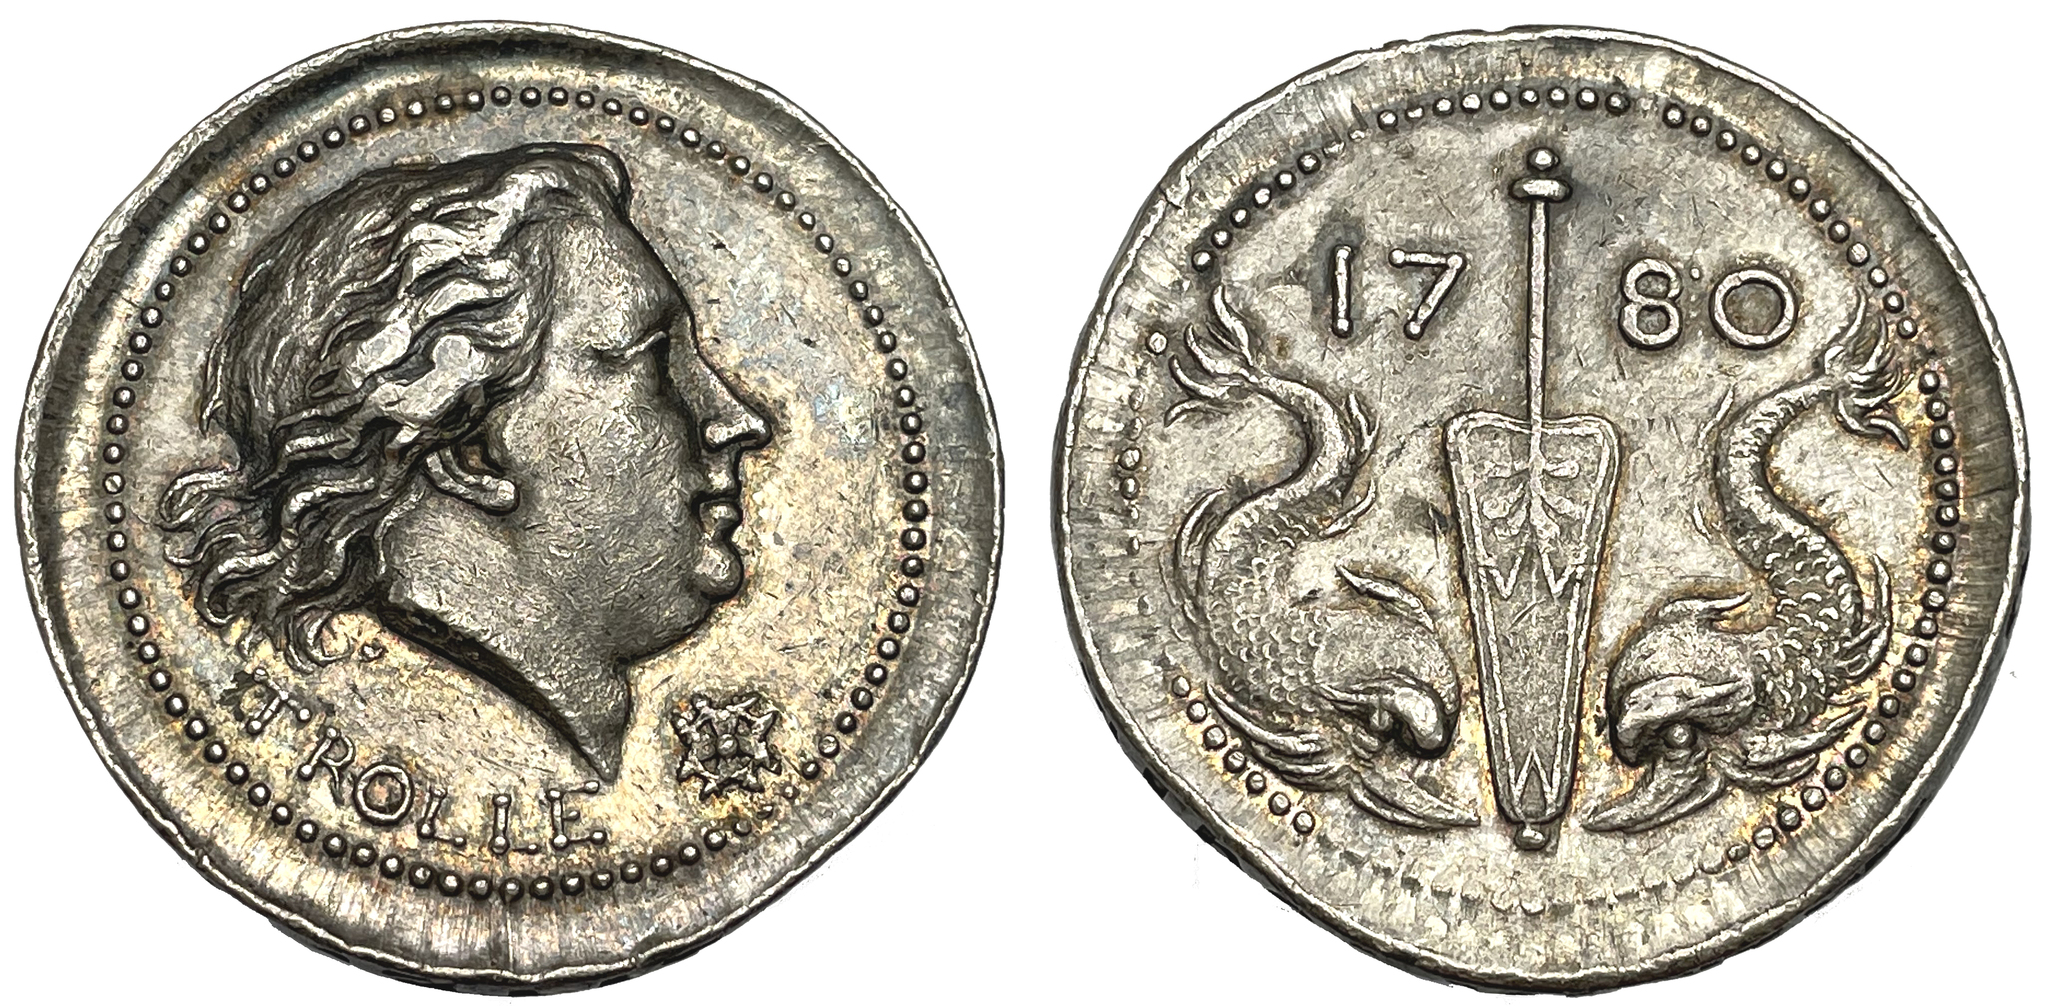 Henrik af Trolle,  (1730-1784) Generalamiral i svenska flottan - minnesmedalj i silver utdelad 1784 till officerarna - MYCKET VACKER OCH MYCKET SÄLLSYNT!